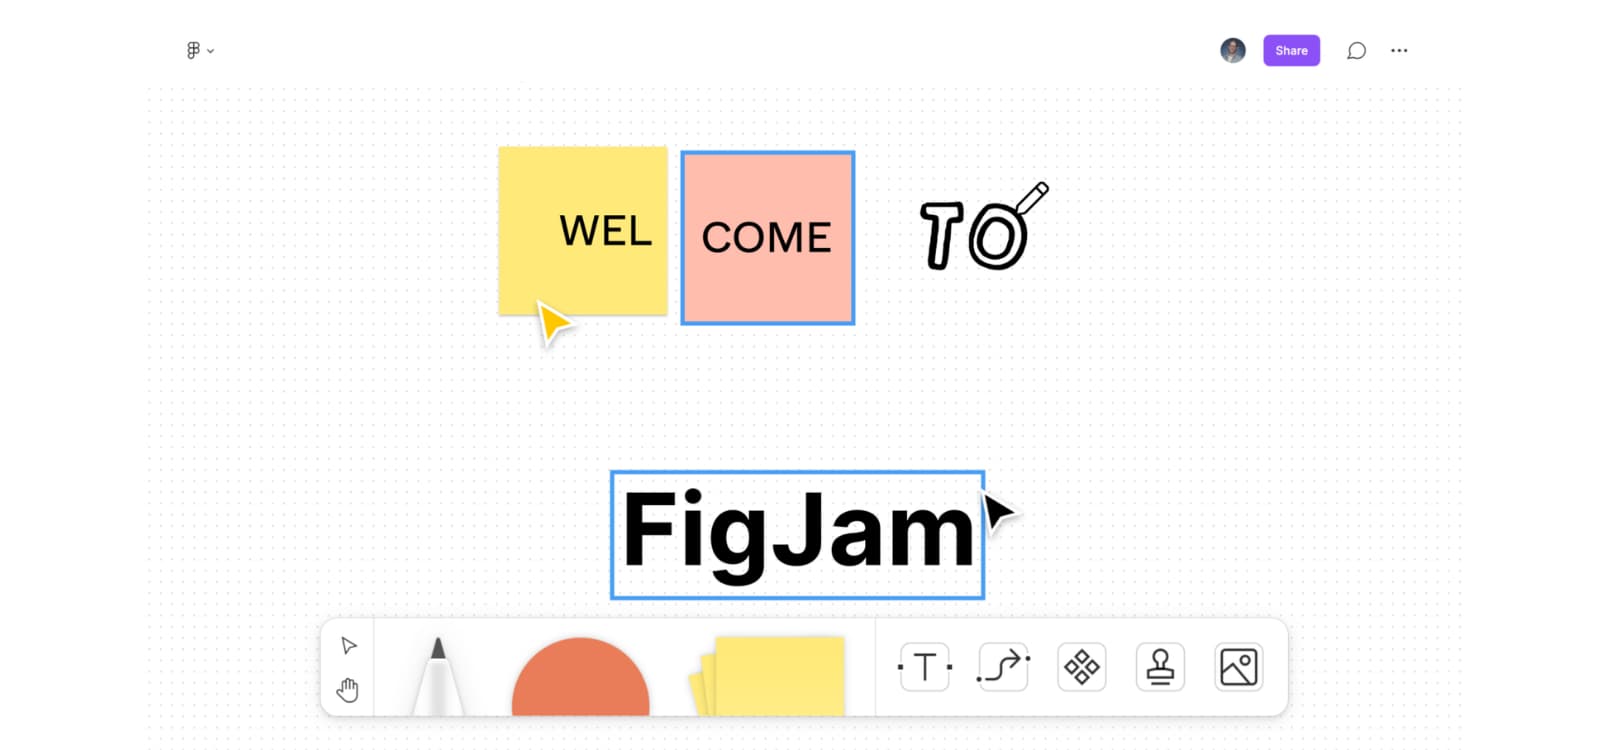 FigJam by Figma - 来自 Figma 的多人协作在线白板工具